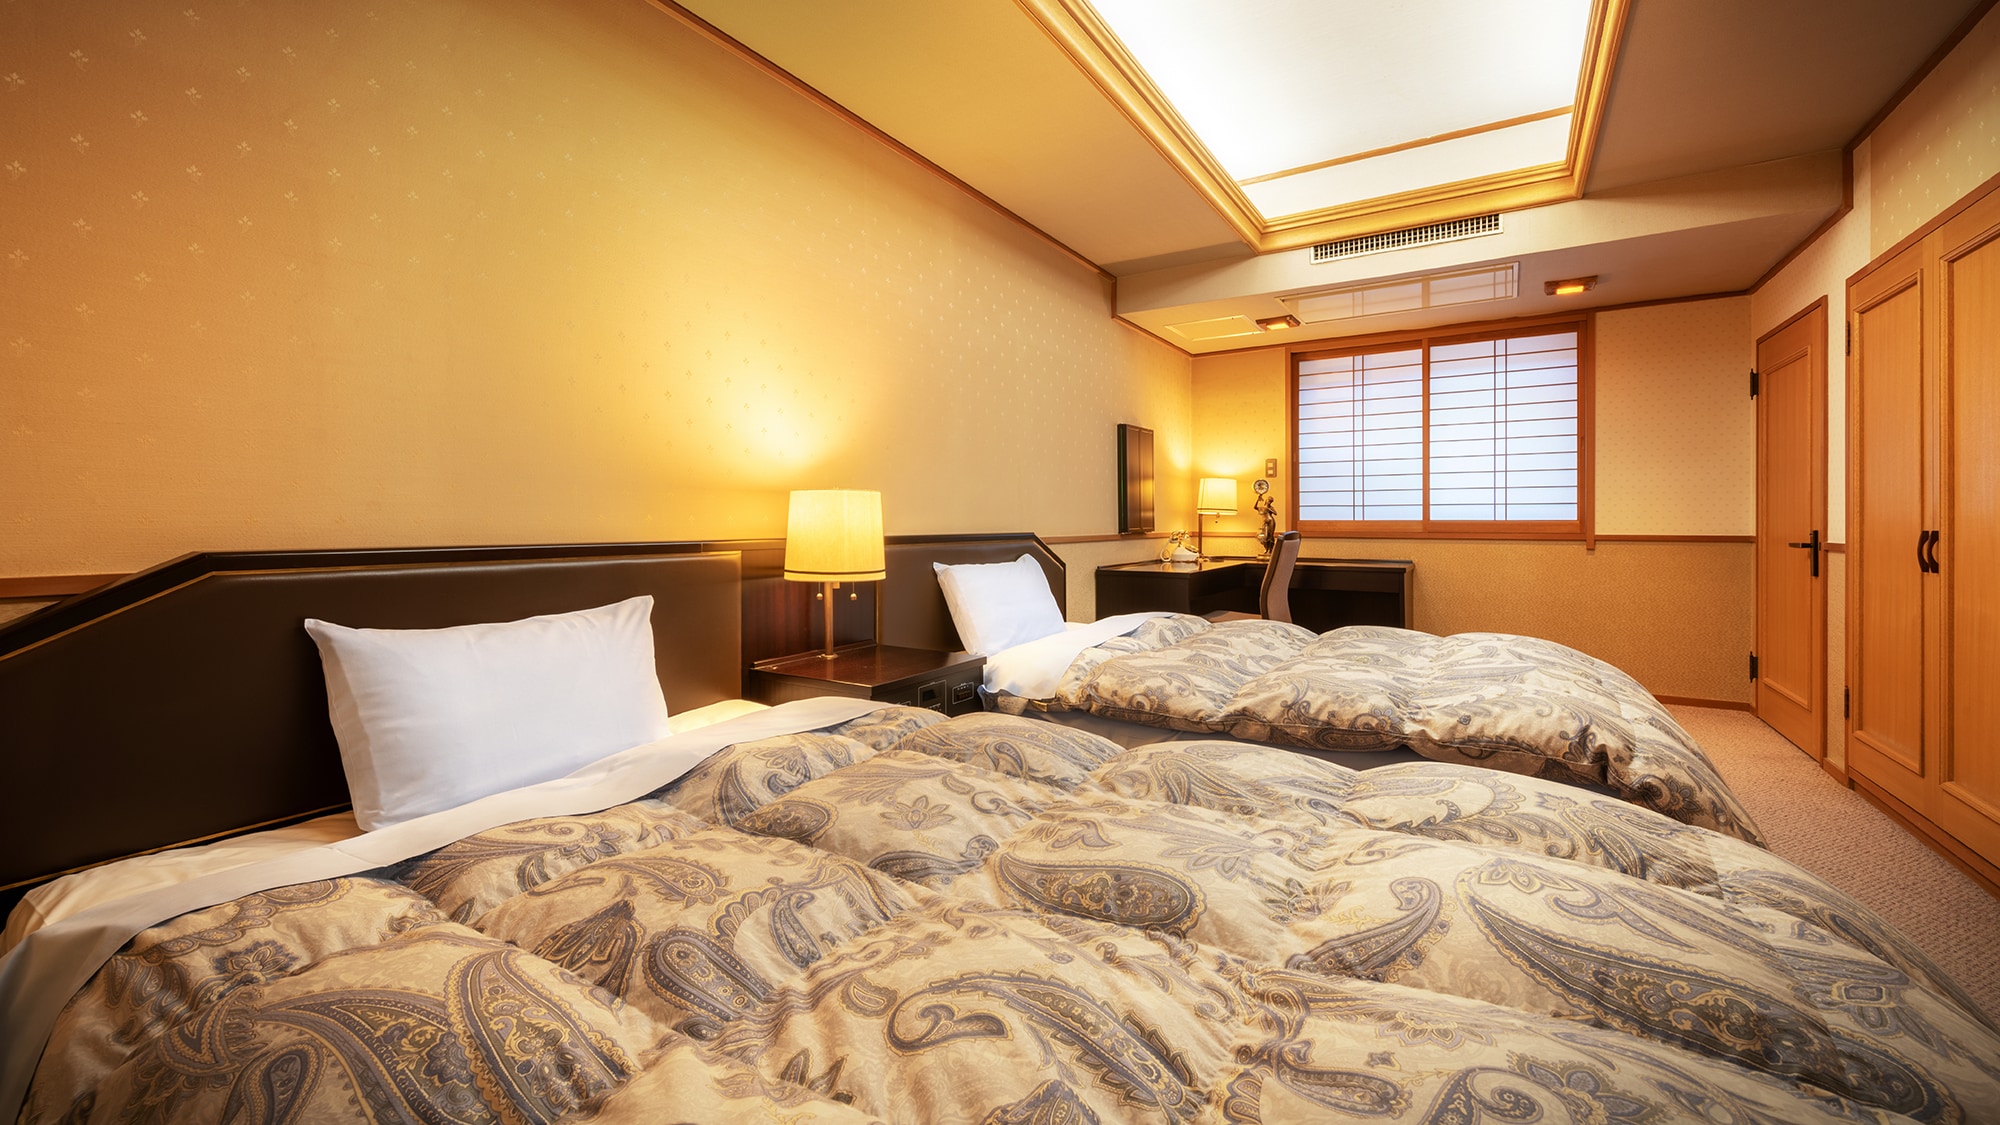 ■ [日西式房間-10榻榻米+雙床房] ■ 日式房間1和西式房間隔門隔開。